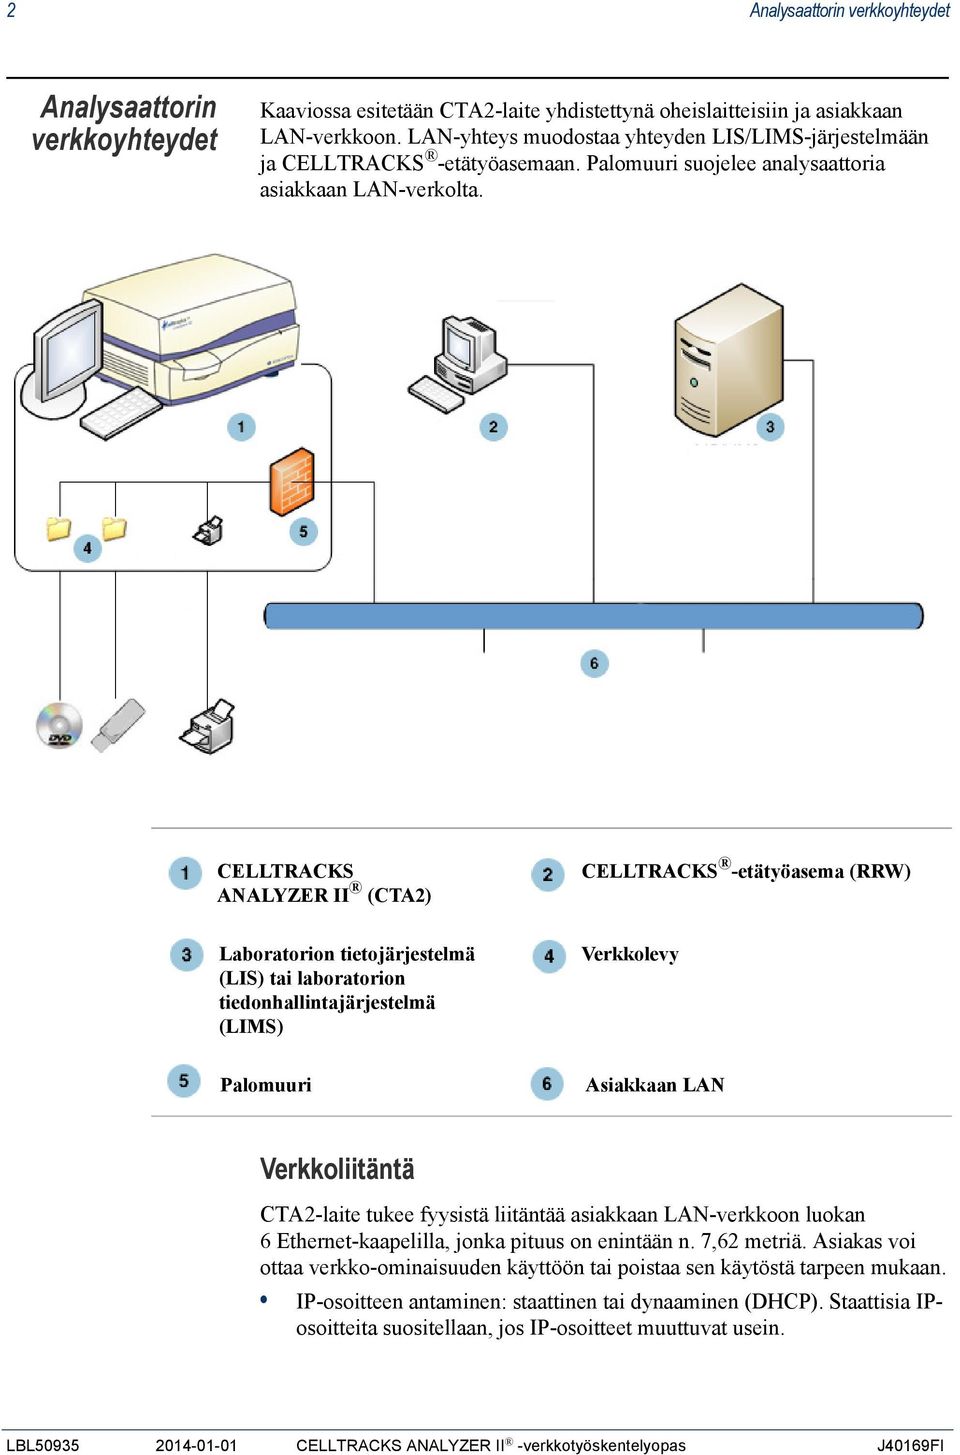 CELLTRACKS ANALYZER II (CTA2) CELLTRACKS -etätyöasema (RRW) Laboratorion tietojärjestelmä (LIS) tai laboratorion tiedonhallintajärjestelmä (LIMS) Verkkolevy Palomuuri Asiakkaan LAN Verkkoliitäntä